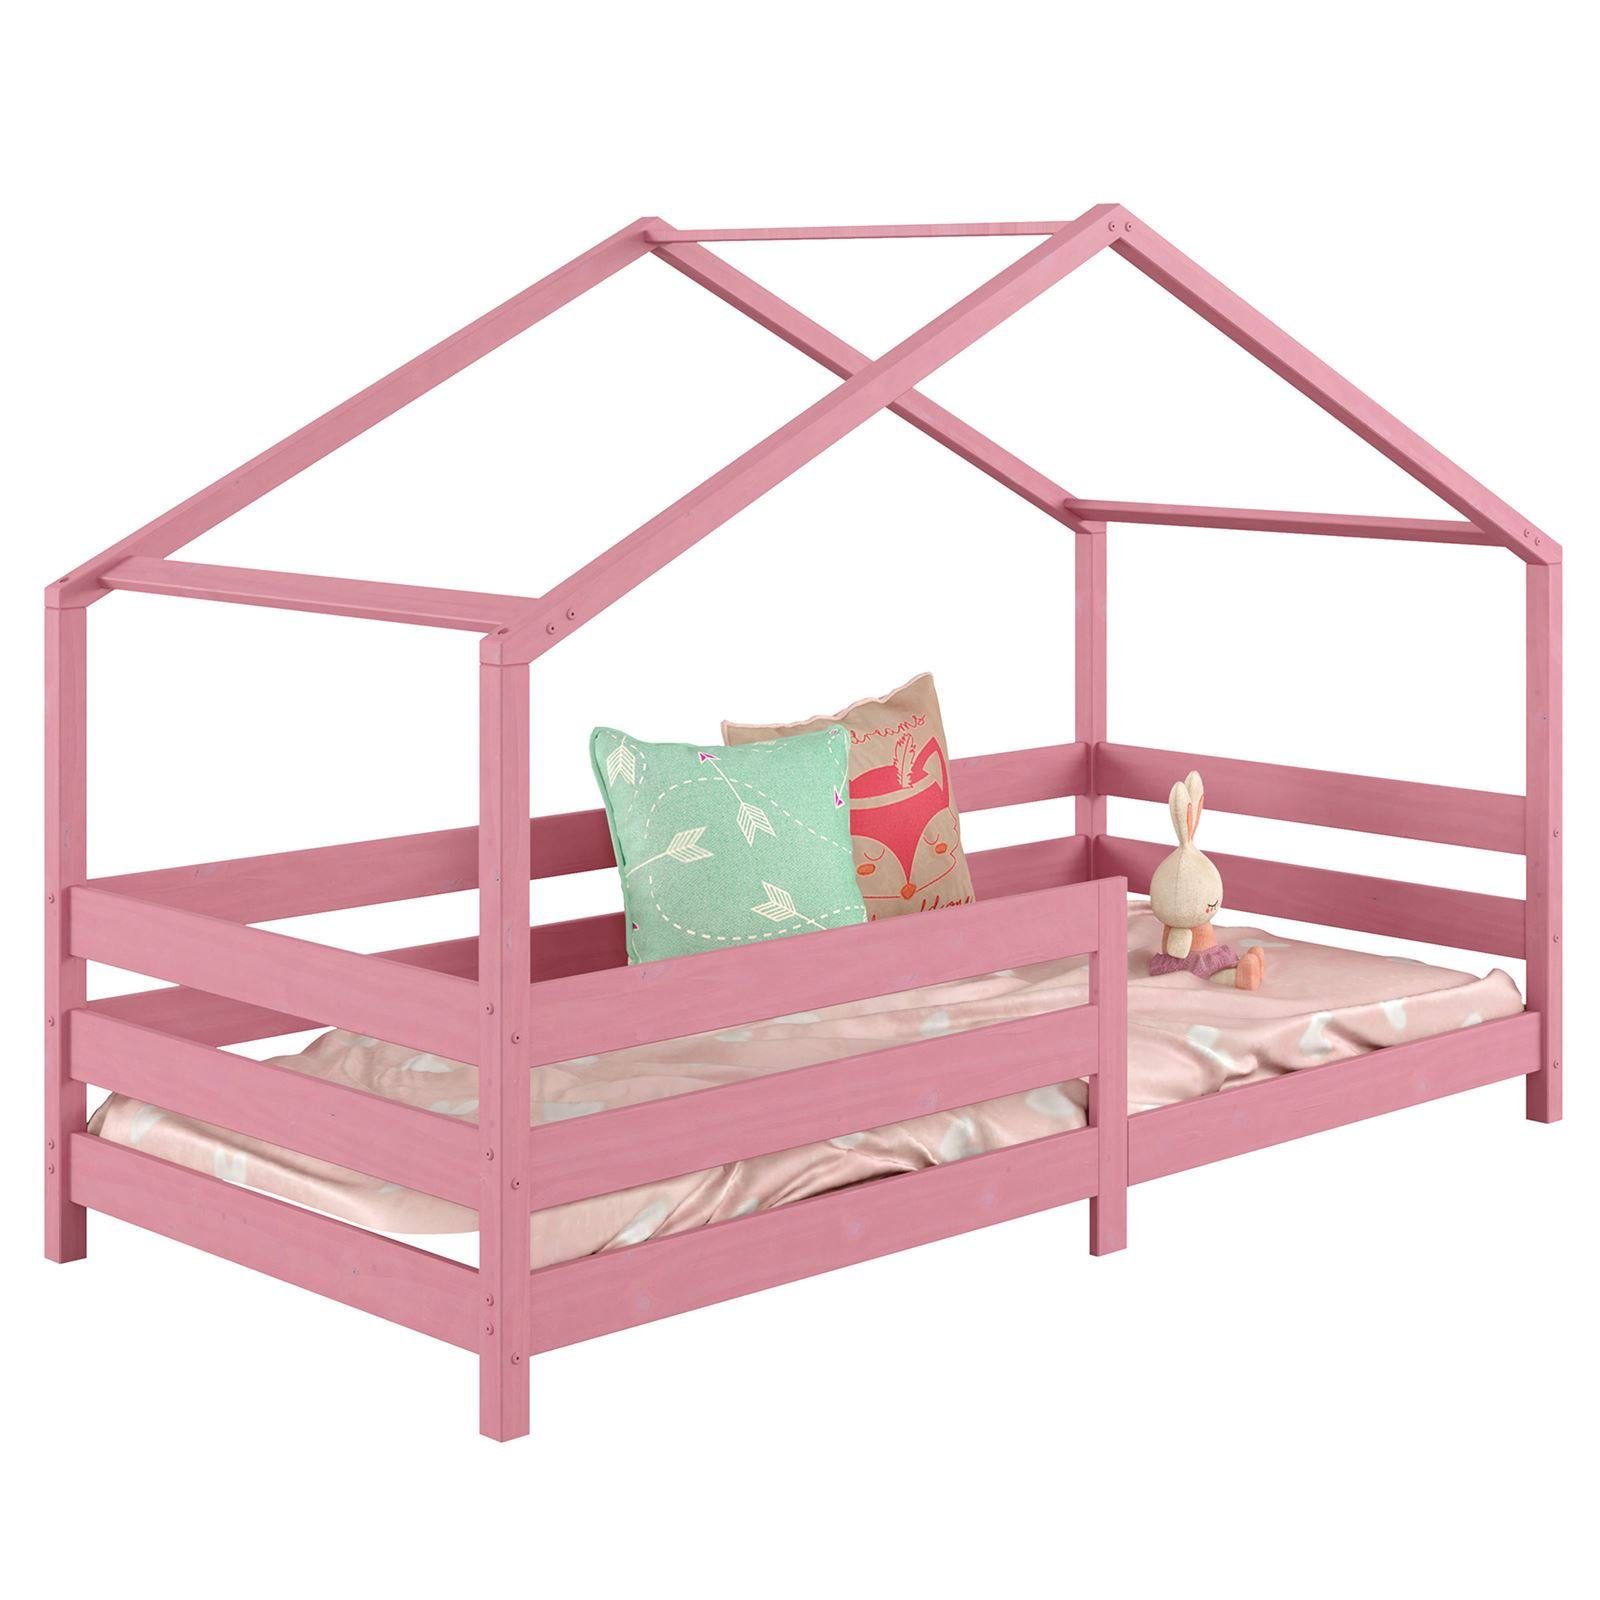 IDIMEX Kinderbett RENA, Hausbett Montessori Bett 90 x 200 Kinderbett Rausfallschutz Kiefer ros rosa